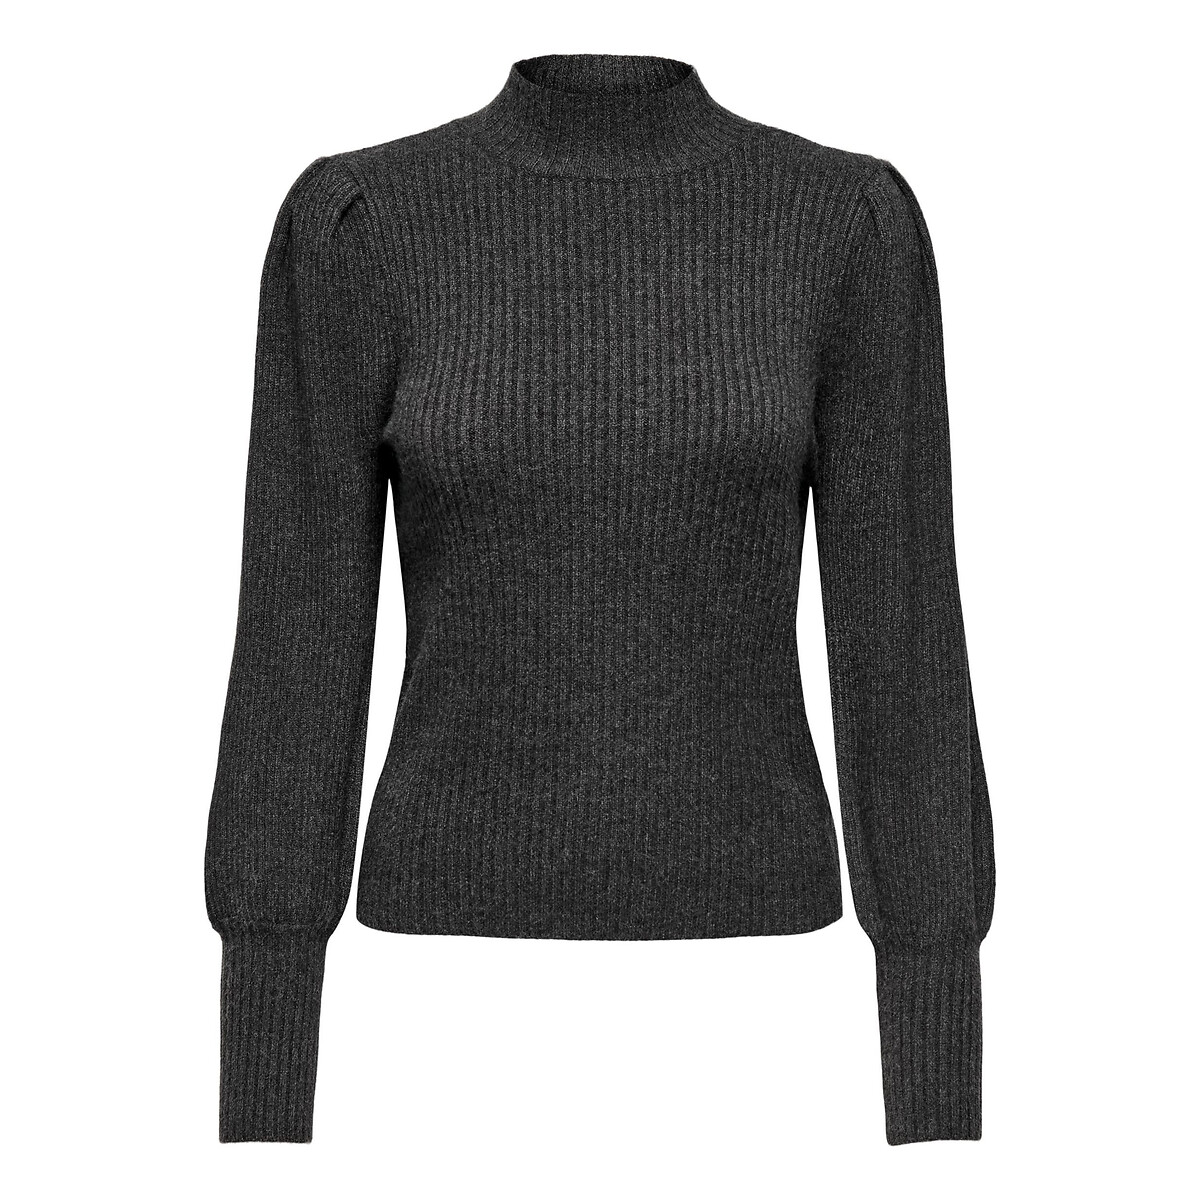 Пуловер с воротником-стойкой из тонкого трикотажа XXL серый пуловер с воротником стойкой xxl каштановый